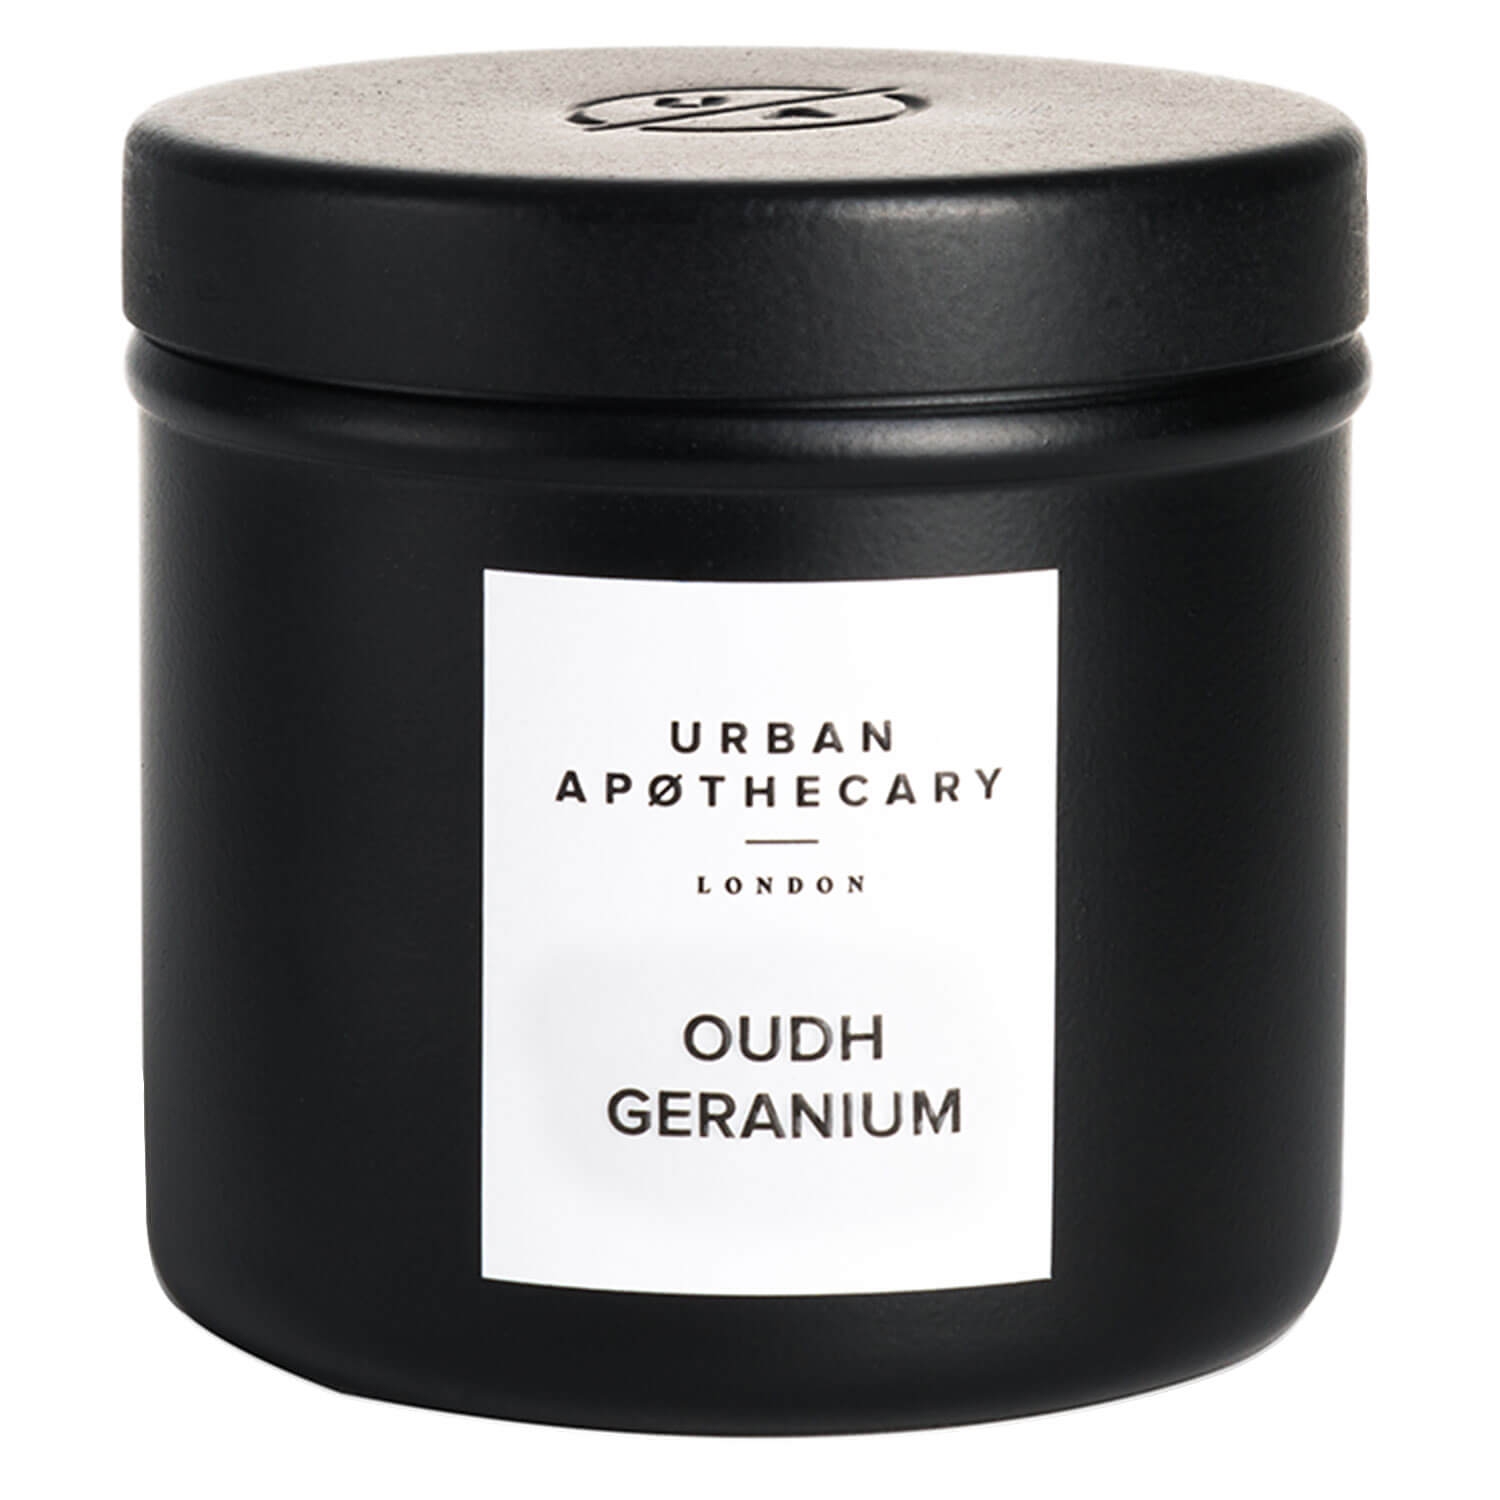 Produktbild von Urban Apothecary - Luxury Iron Travel Candle Oudh Geranium